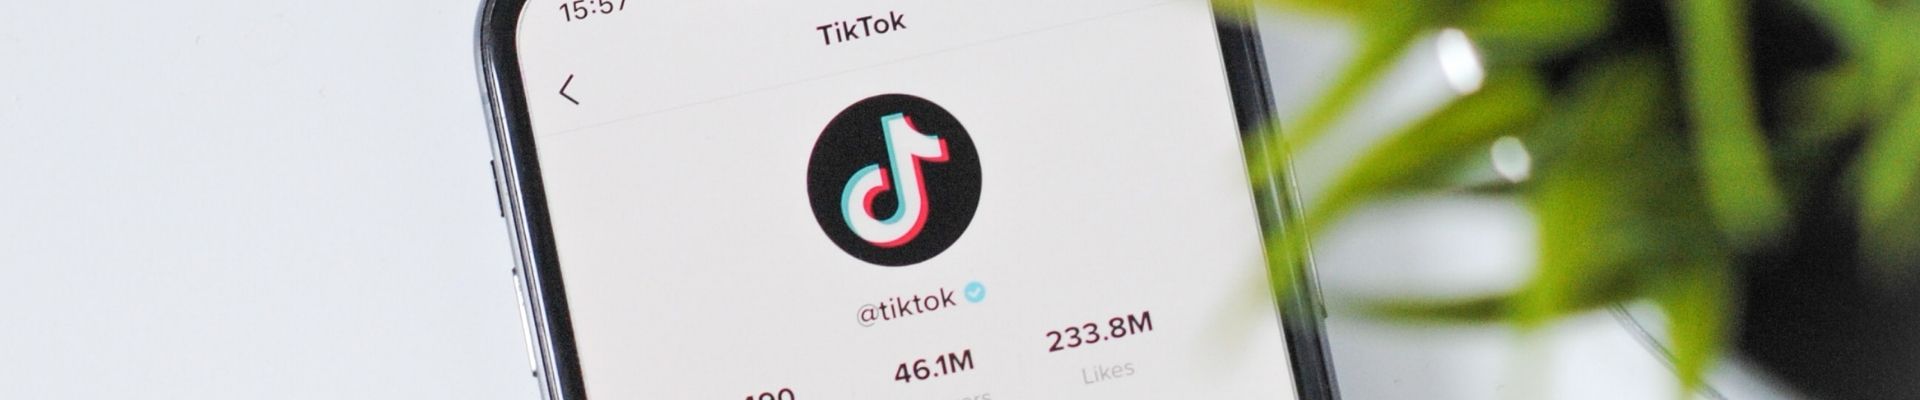 TikTok desbanca o Google e é considerado o aplicativo mais popular do mundo